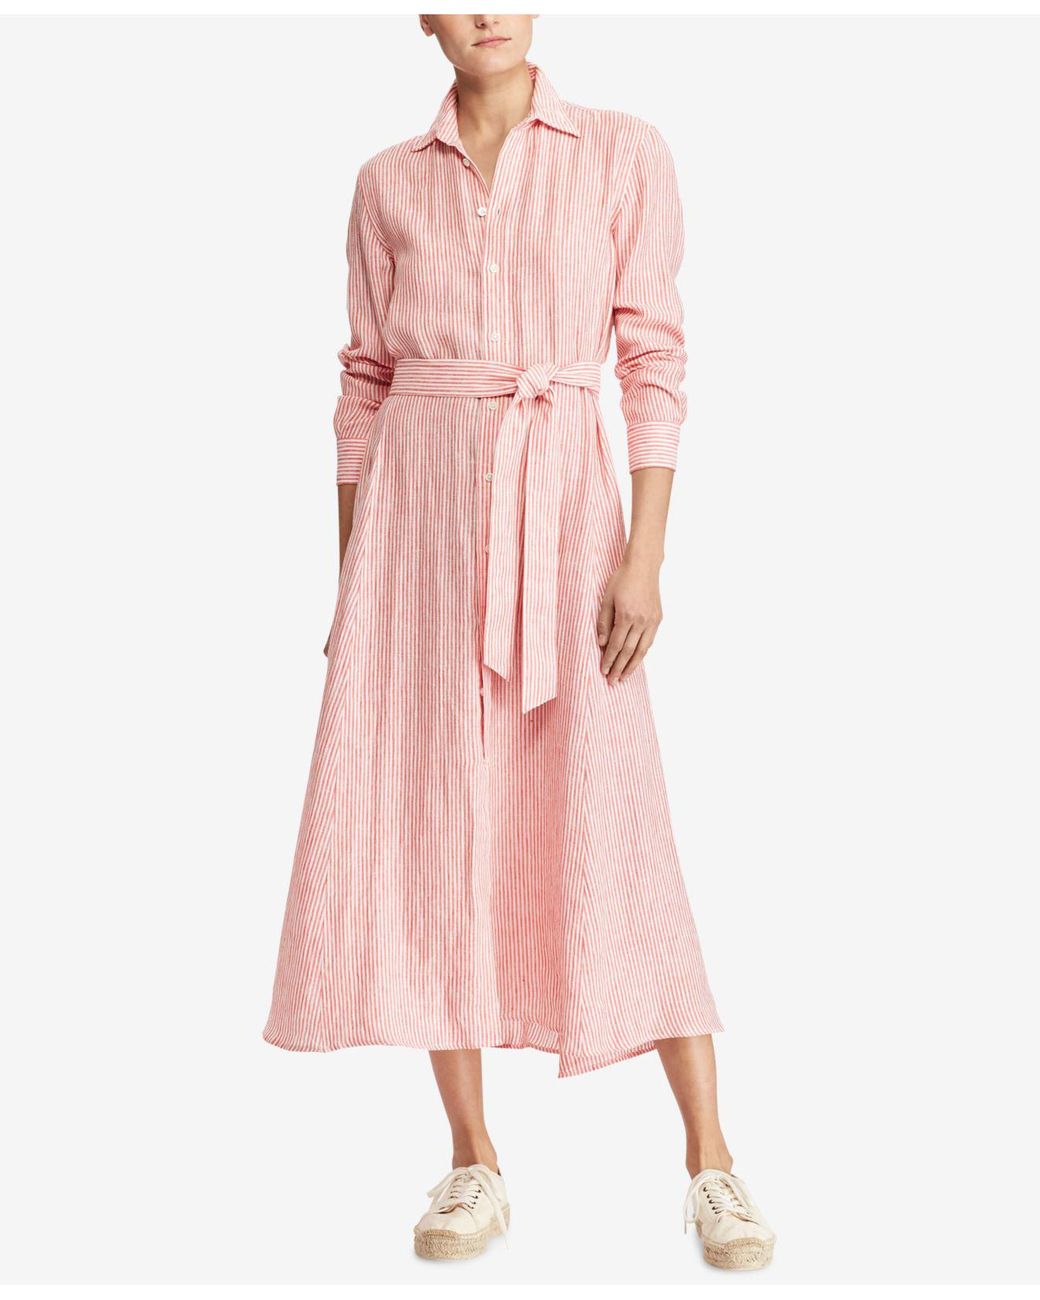 Polo Ralph Lauren Striped Linen Shirtdress in Pink | Lyst